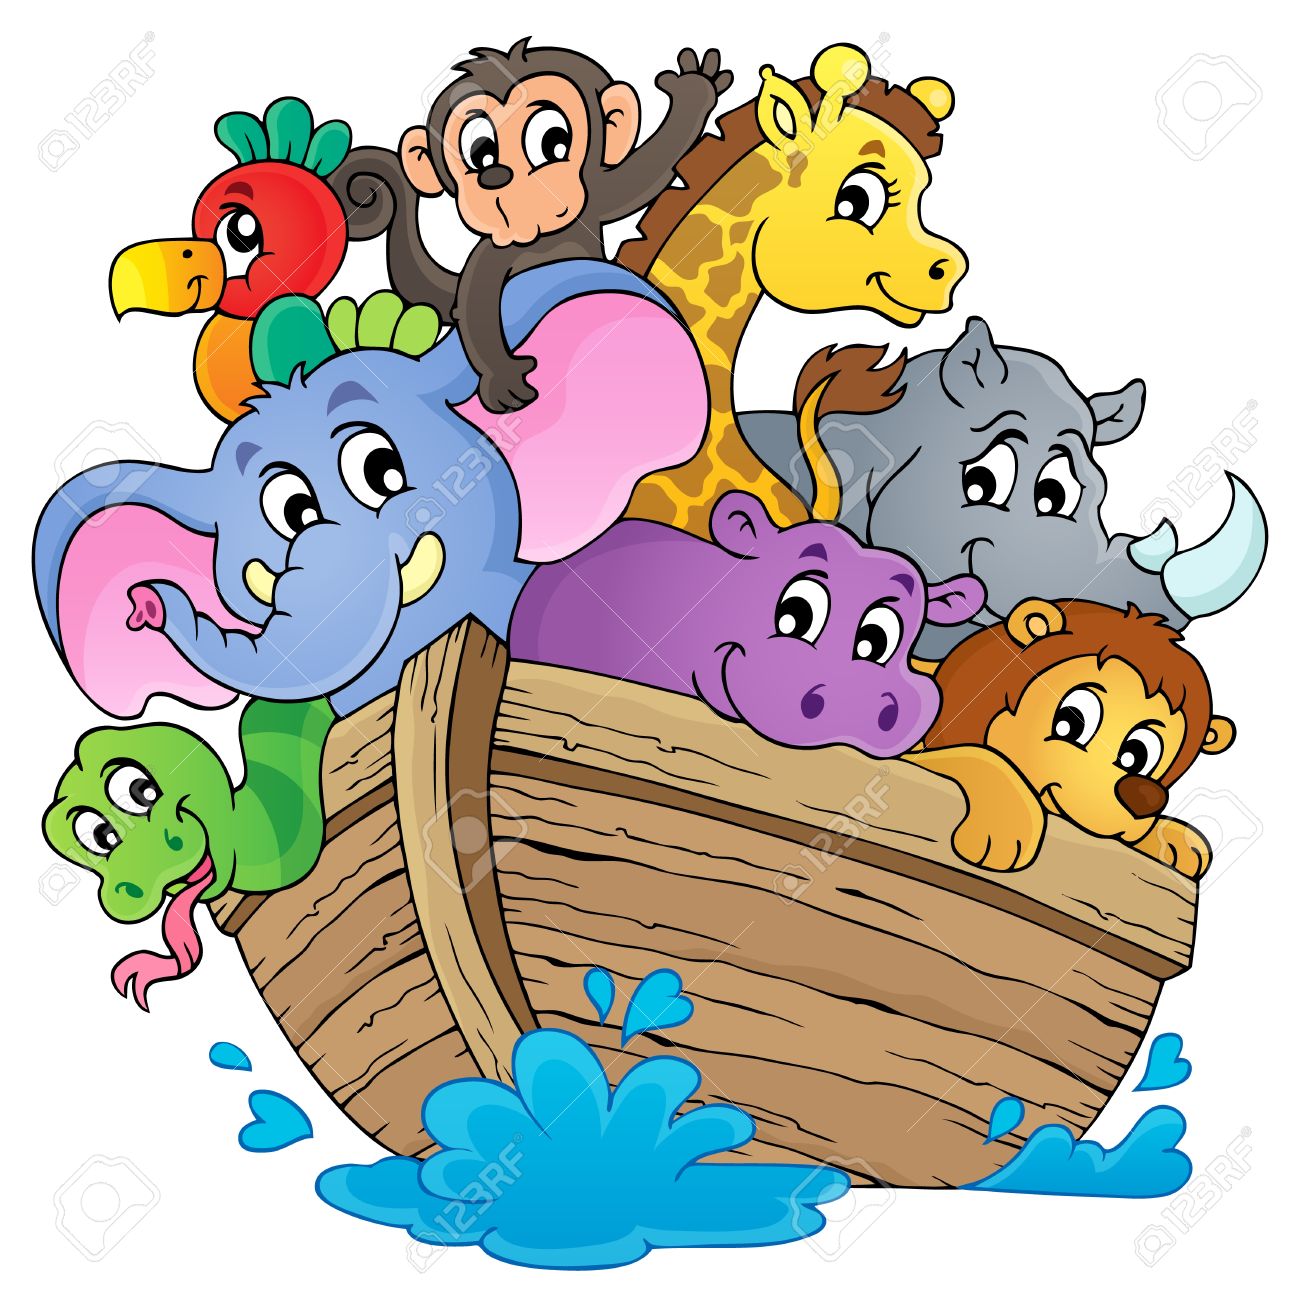 Noahs ark theme image Stock V - Noahs Ark Clipart